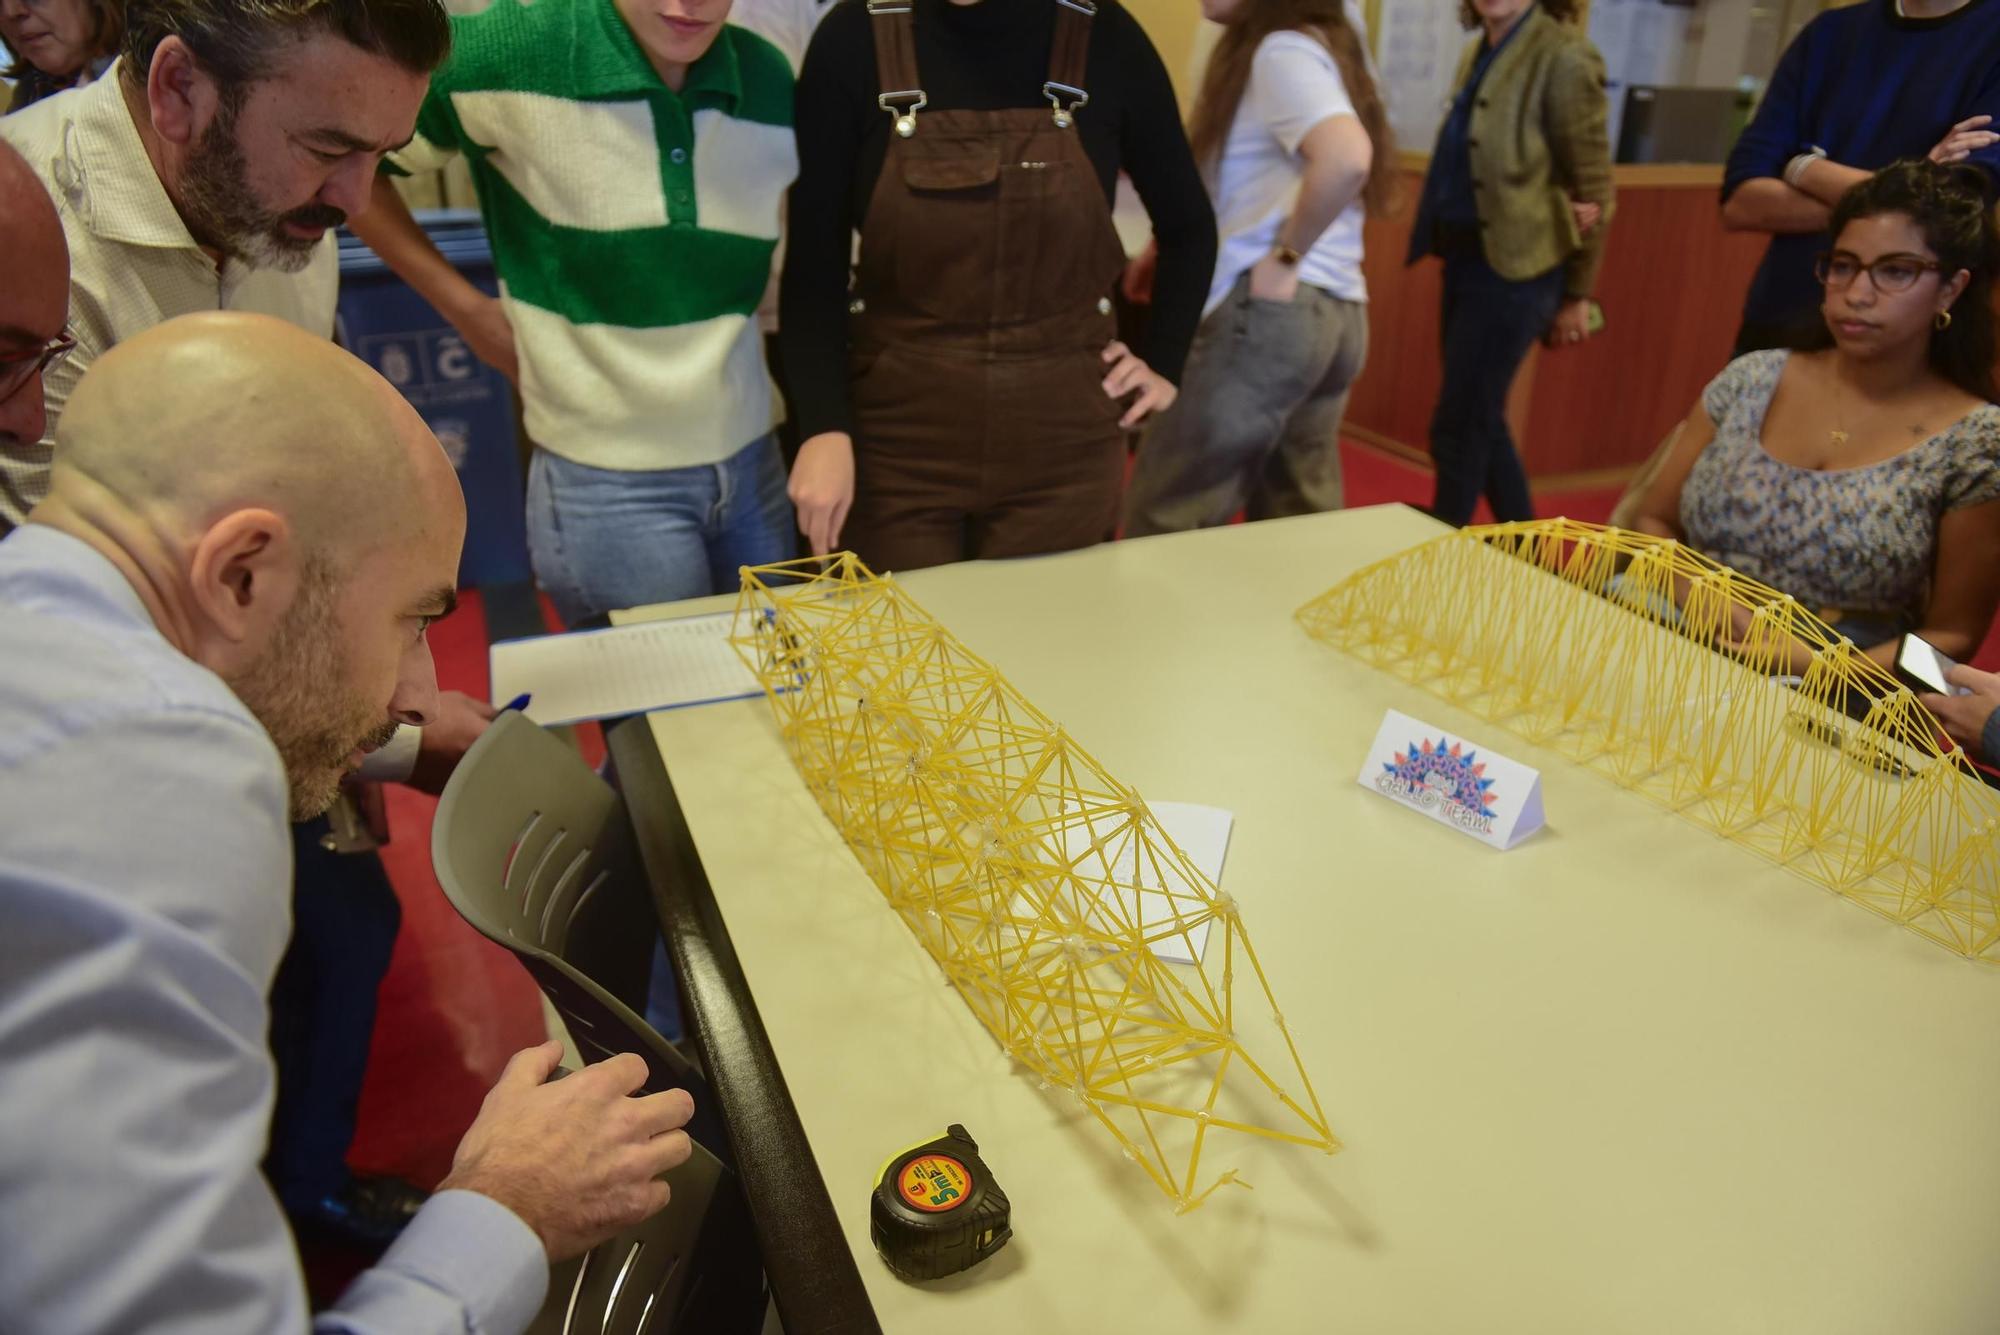 La Escuela de Arquitectura Técnica de A Coruña celebra 50 años con un concurso de vigas de espaguetis